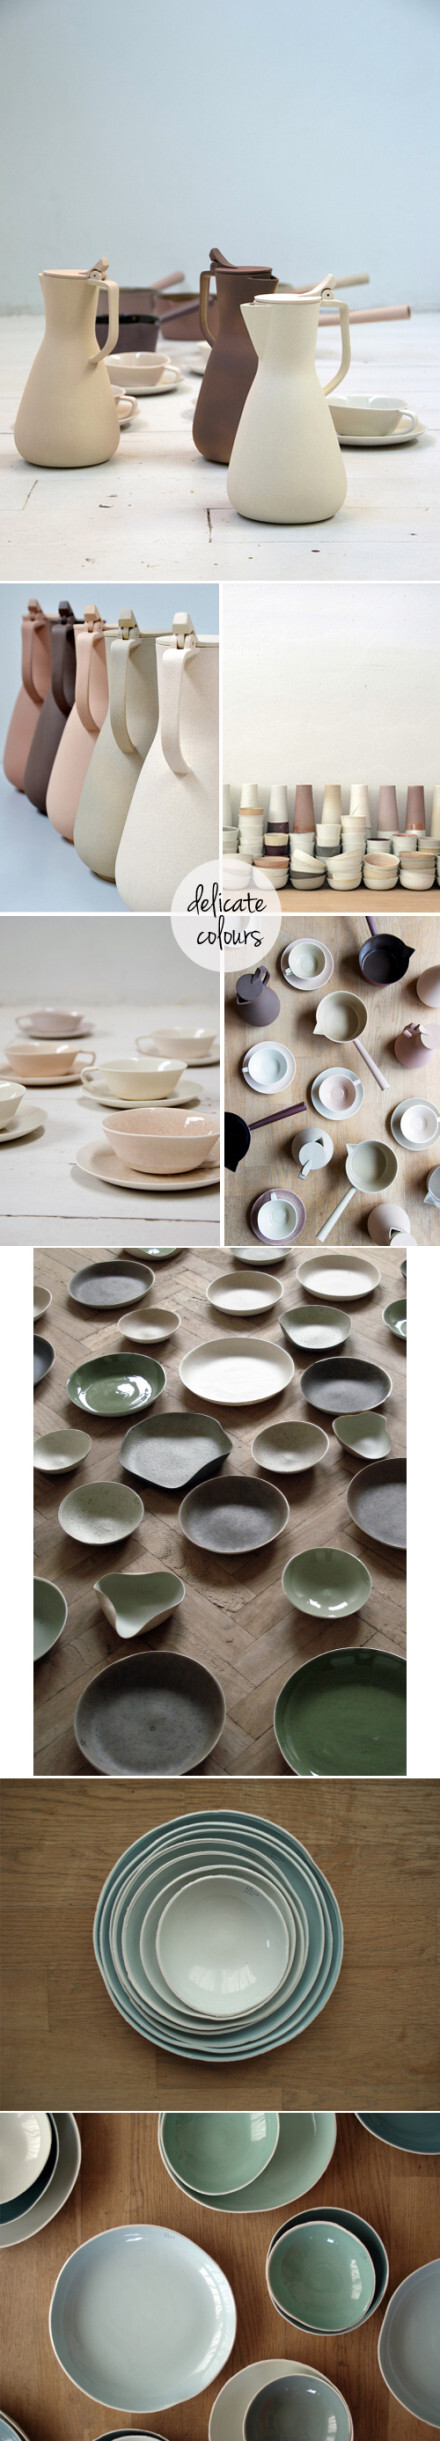 荷兰Eindhoven艺术大学的学生Kirstie van Noort创作的陶瓷器皿。